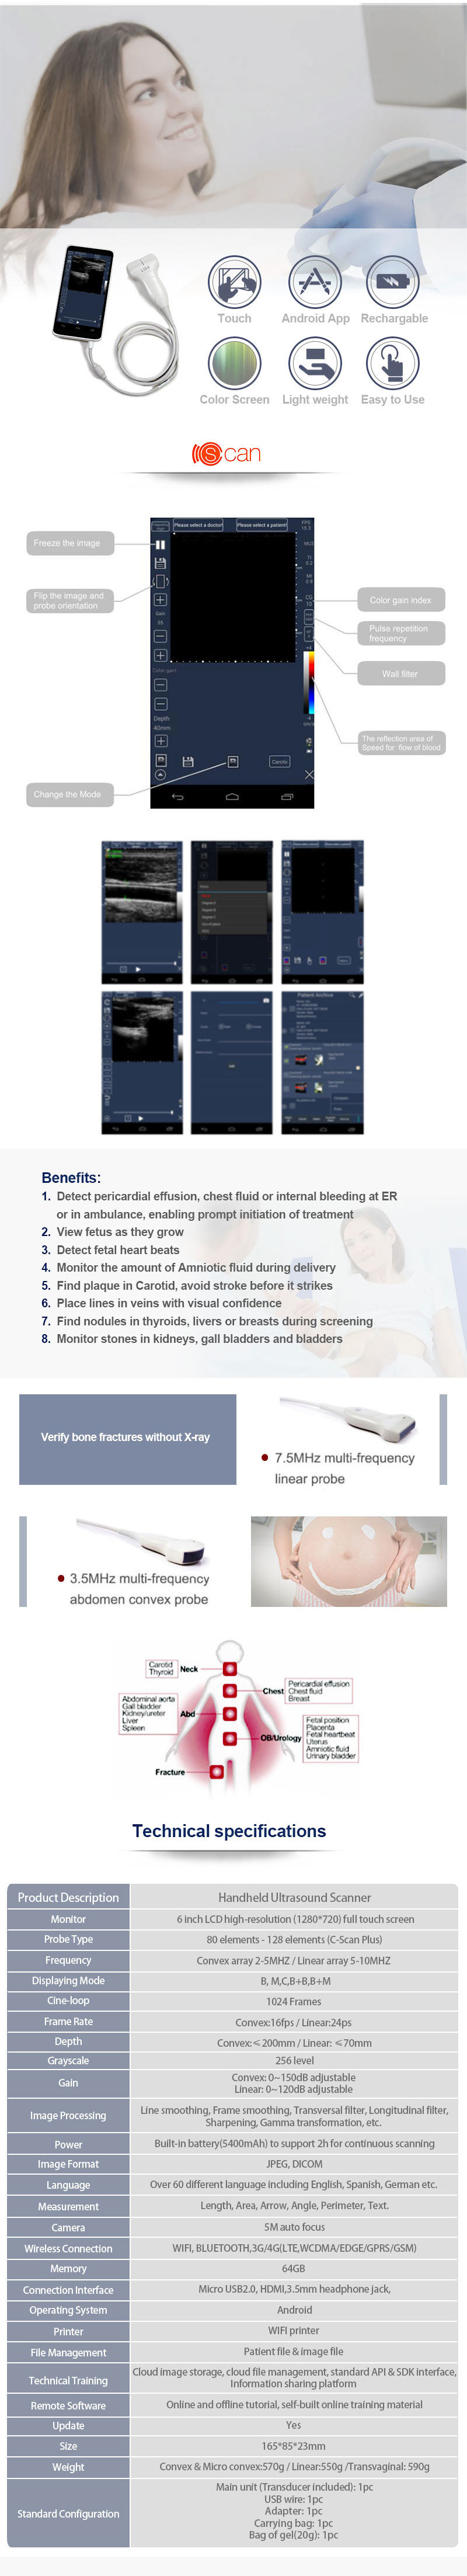 Smart Ultrasound, Android Portable Ultrasound Scanner/Handheld Color Ultrasound